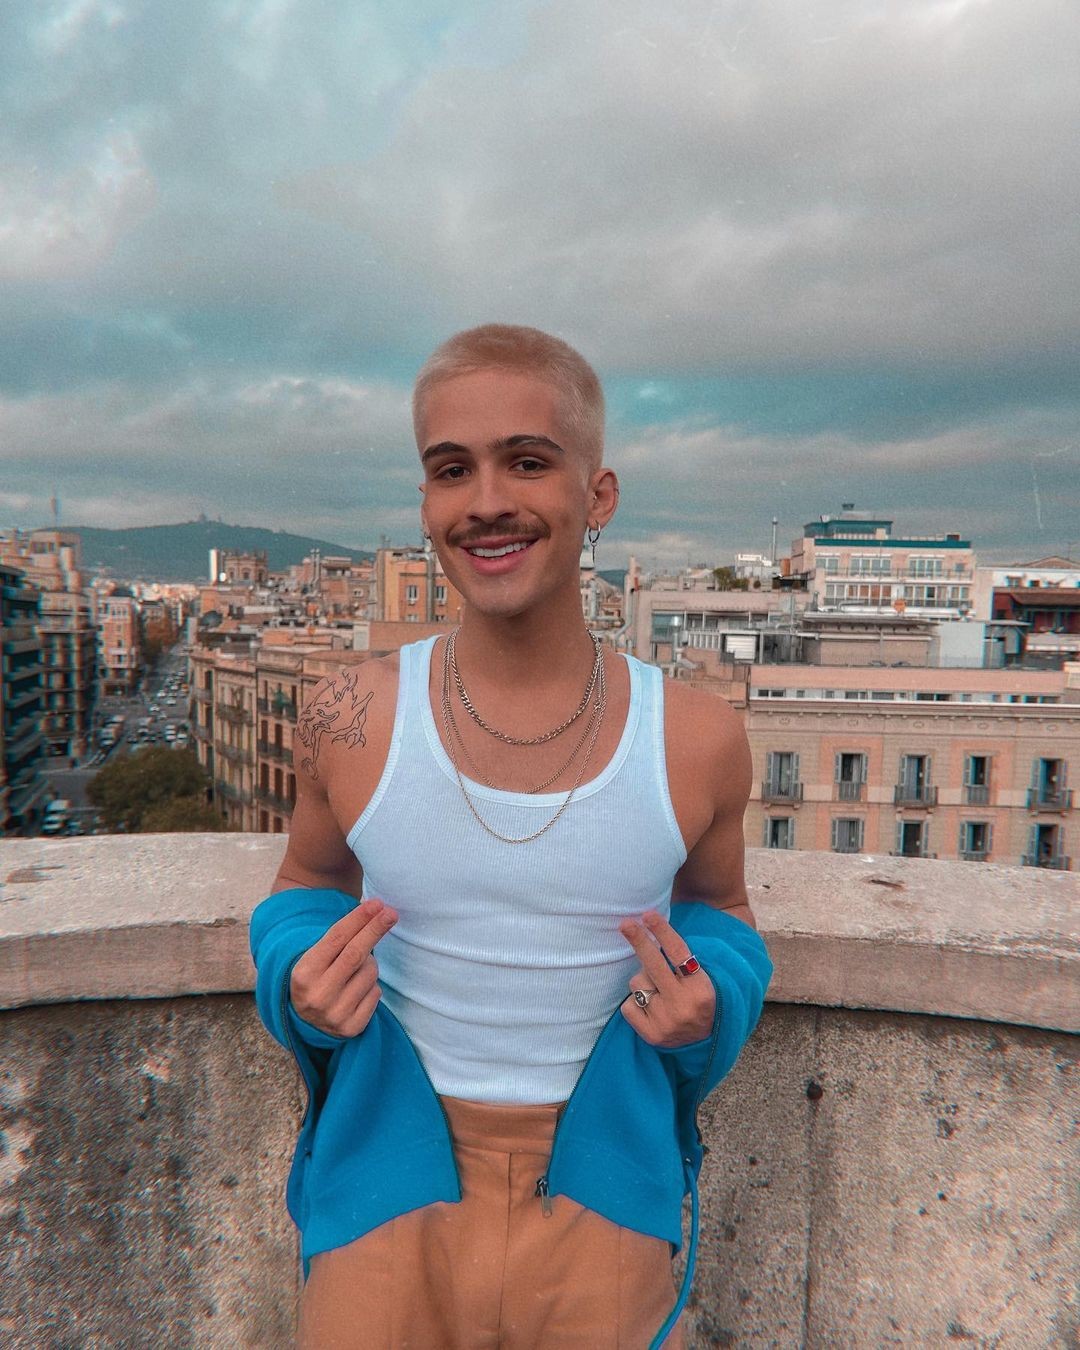 João Guilherme posa sorrindo em Barcelona e dispara: 'Sigo feliz' (Foto: Reprodução / Instagram)